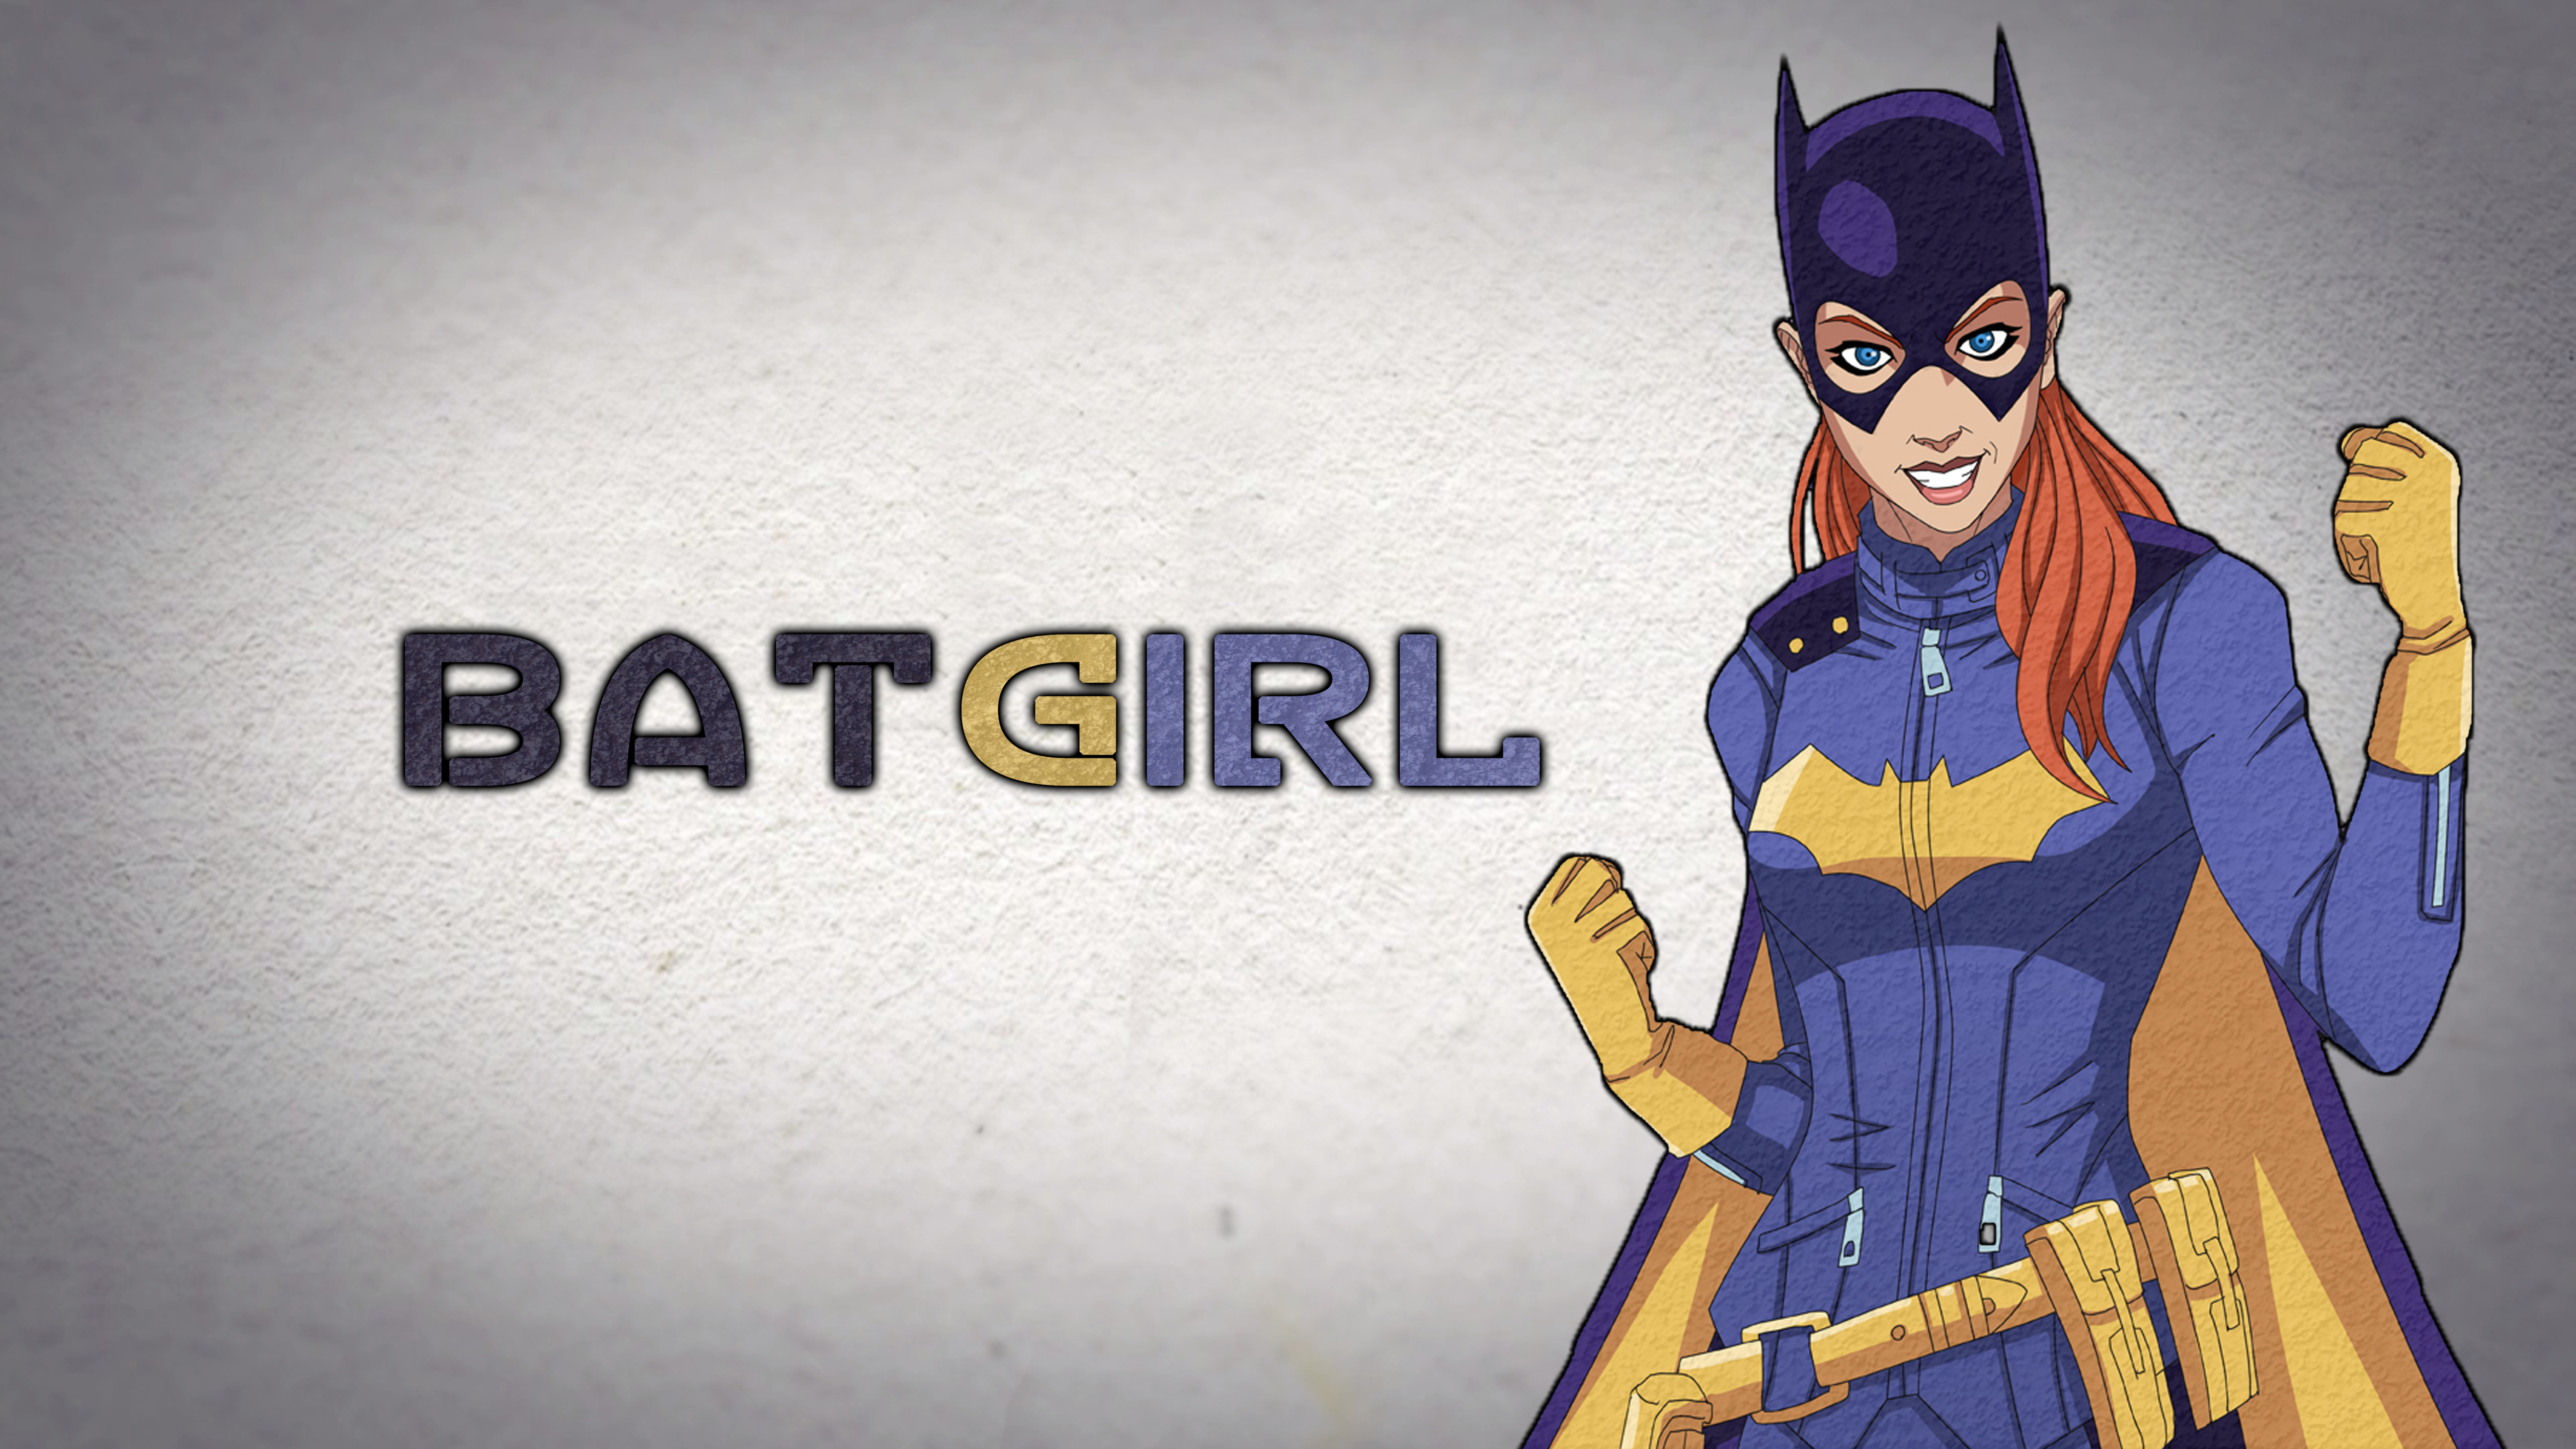 Batgirl Fan art 5K.